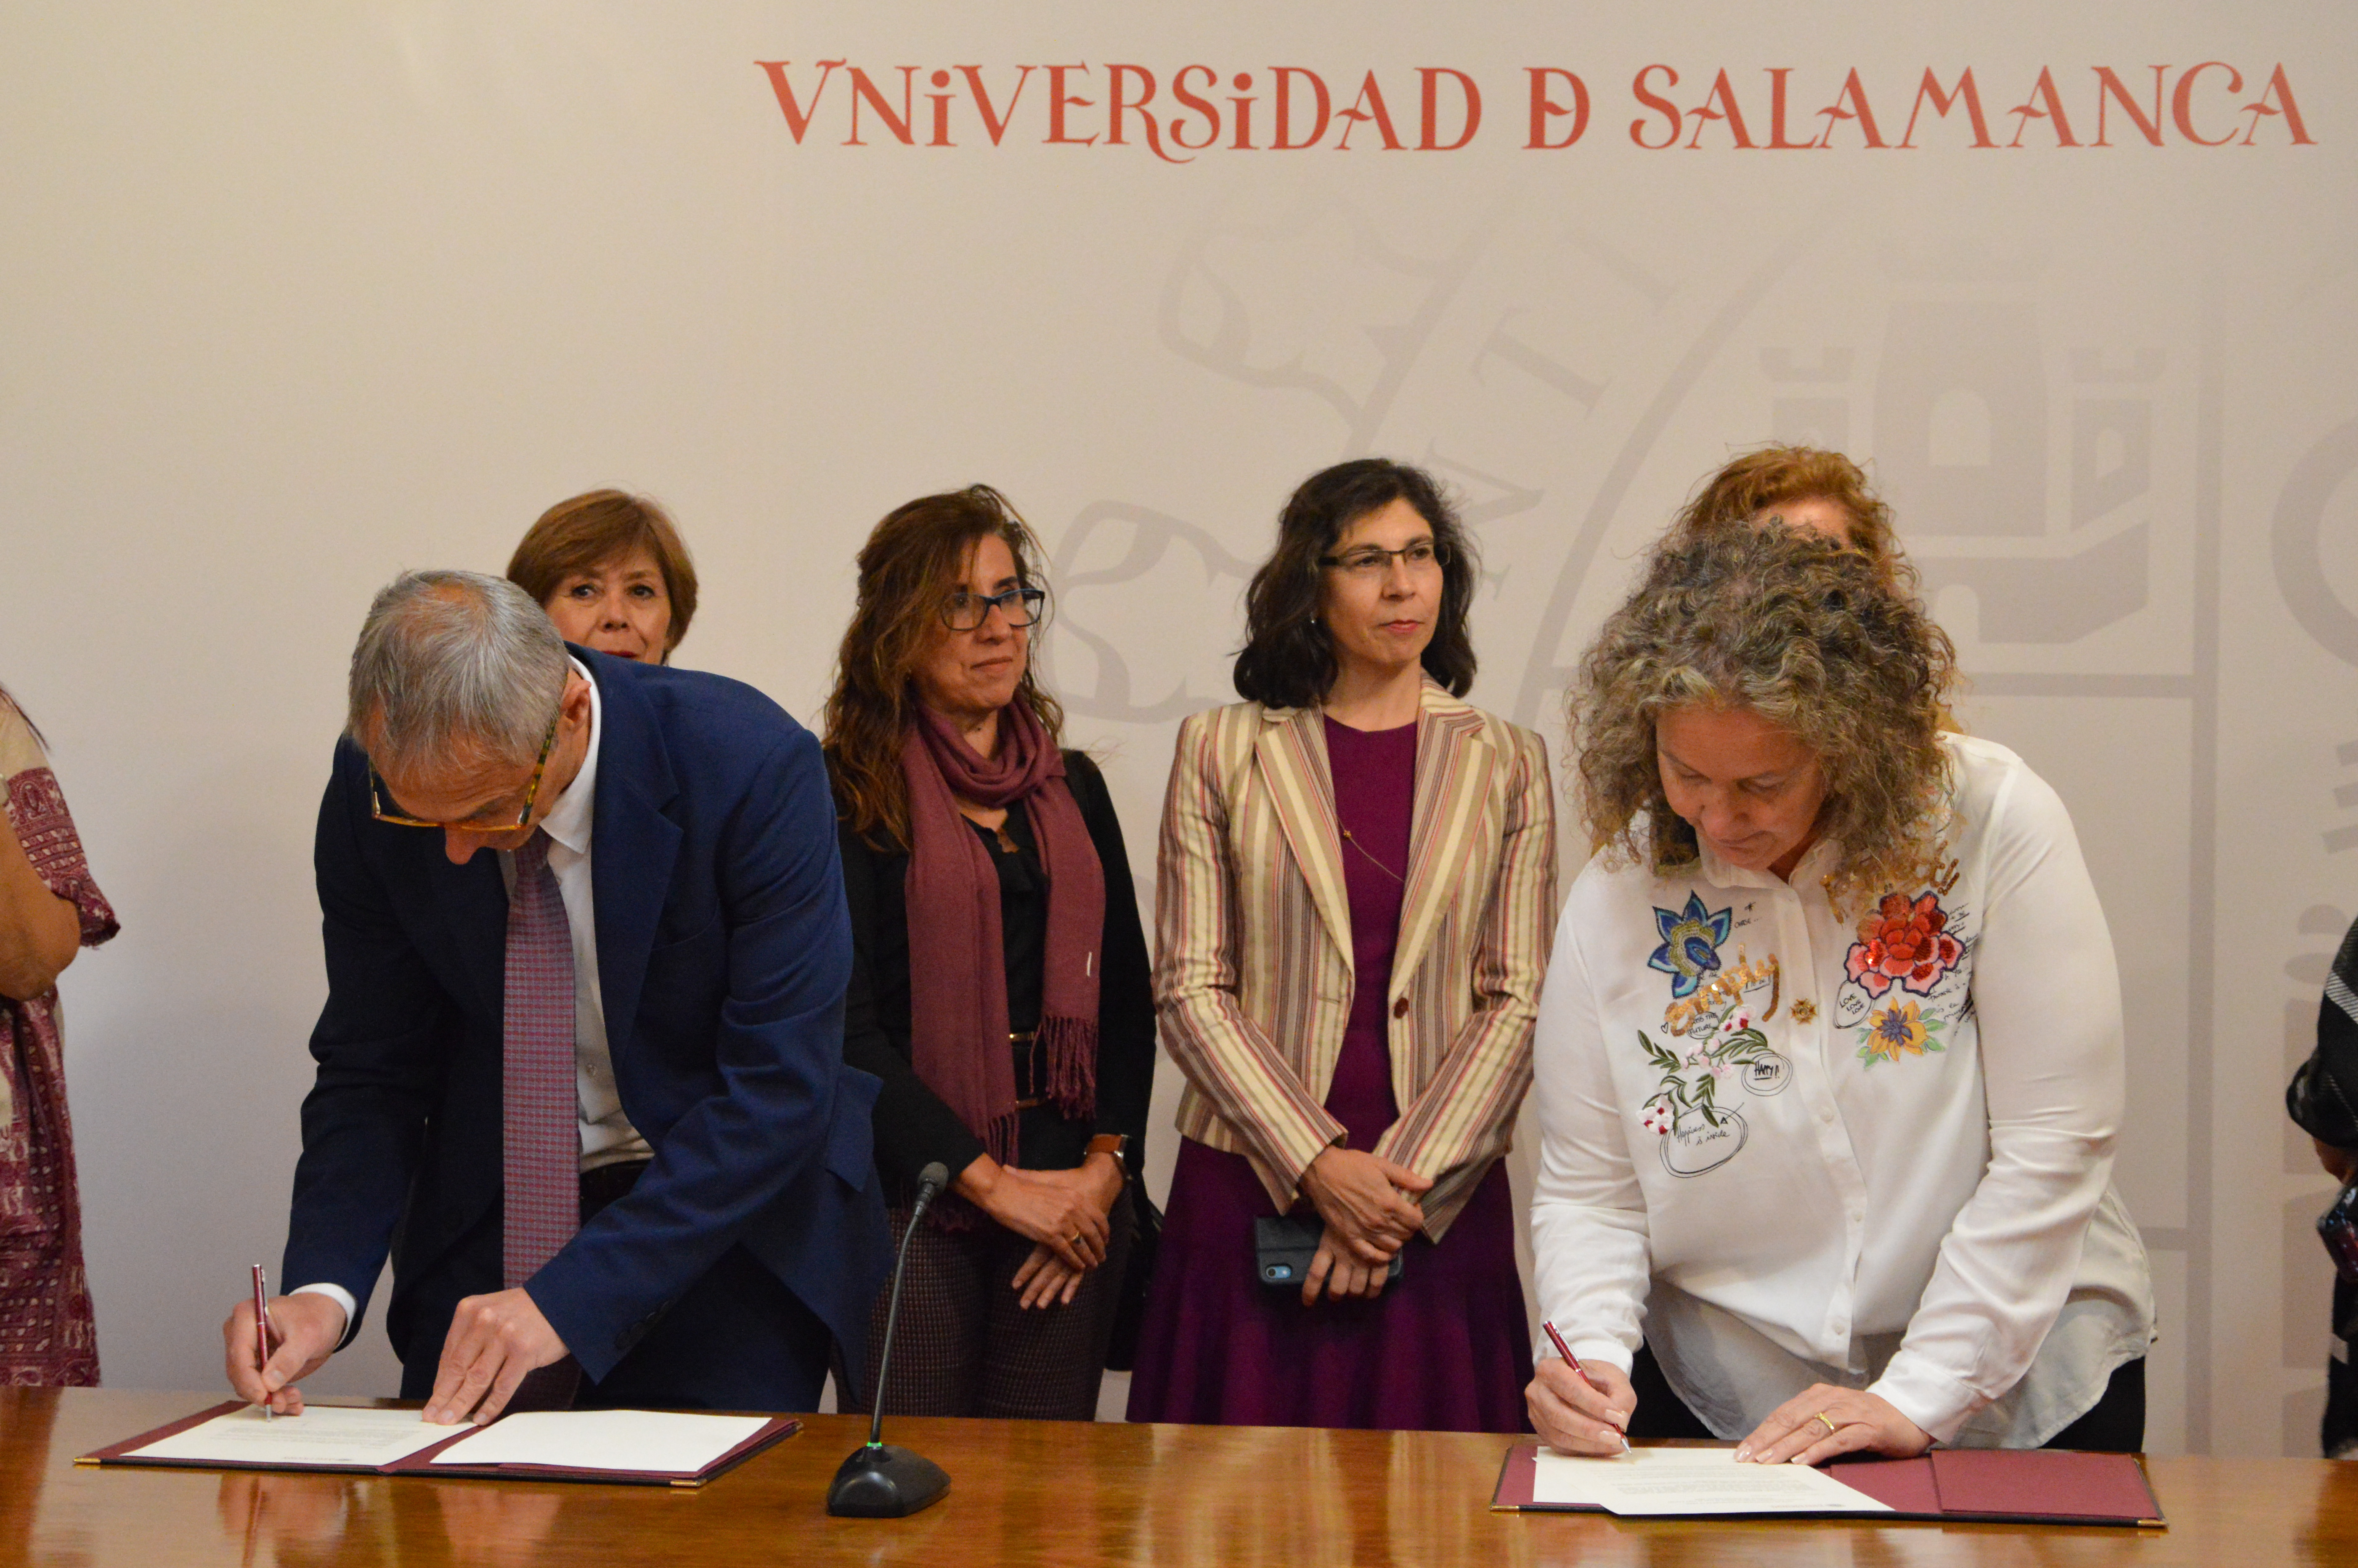 La Universidad de Salamanca recibe una obra de Lope de Vega publicada en 1609